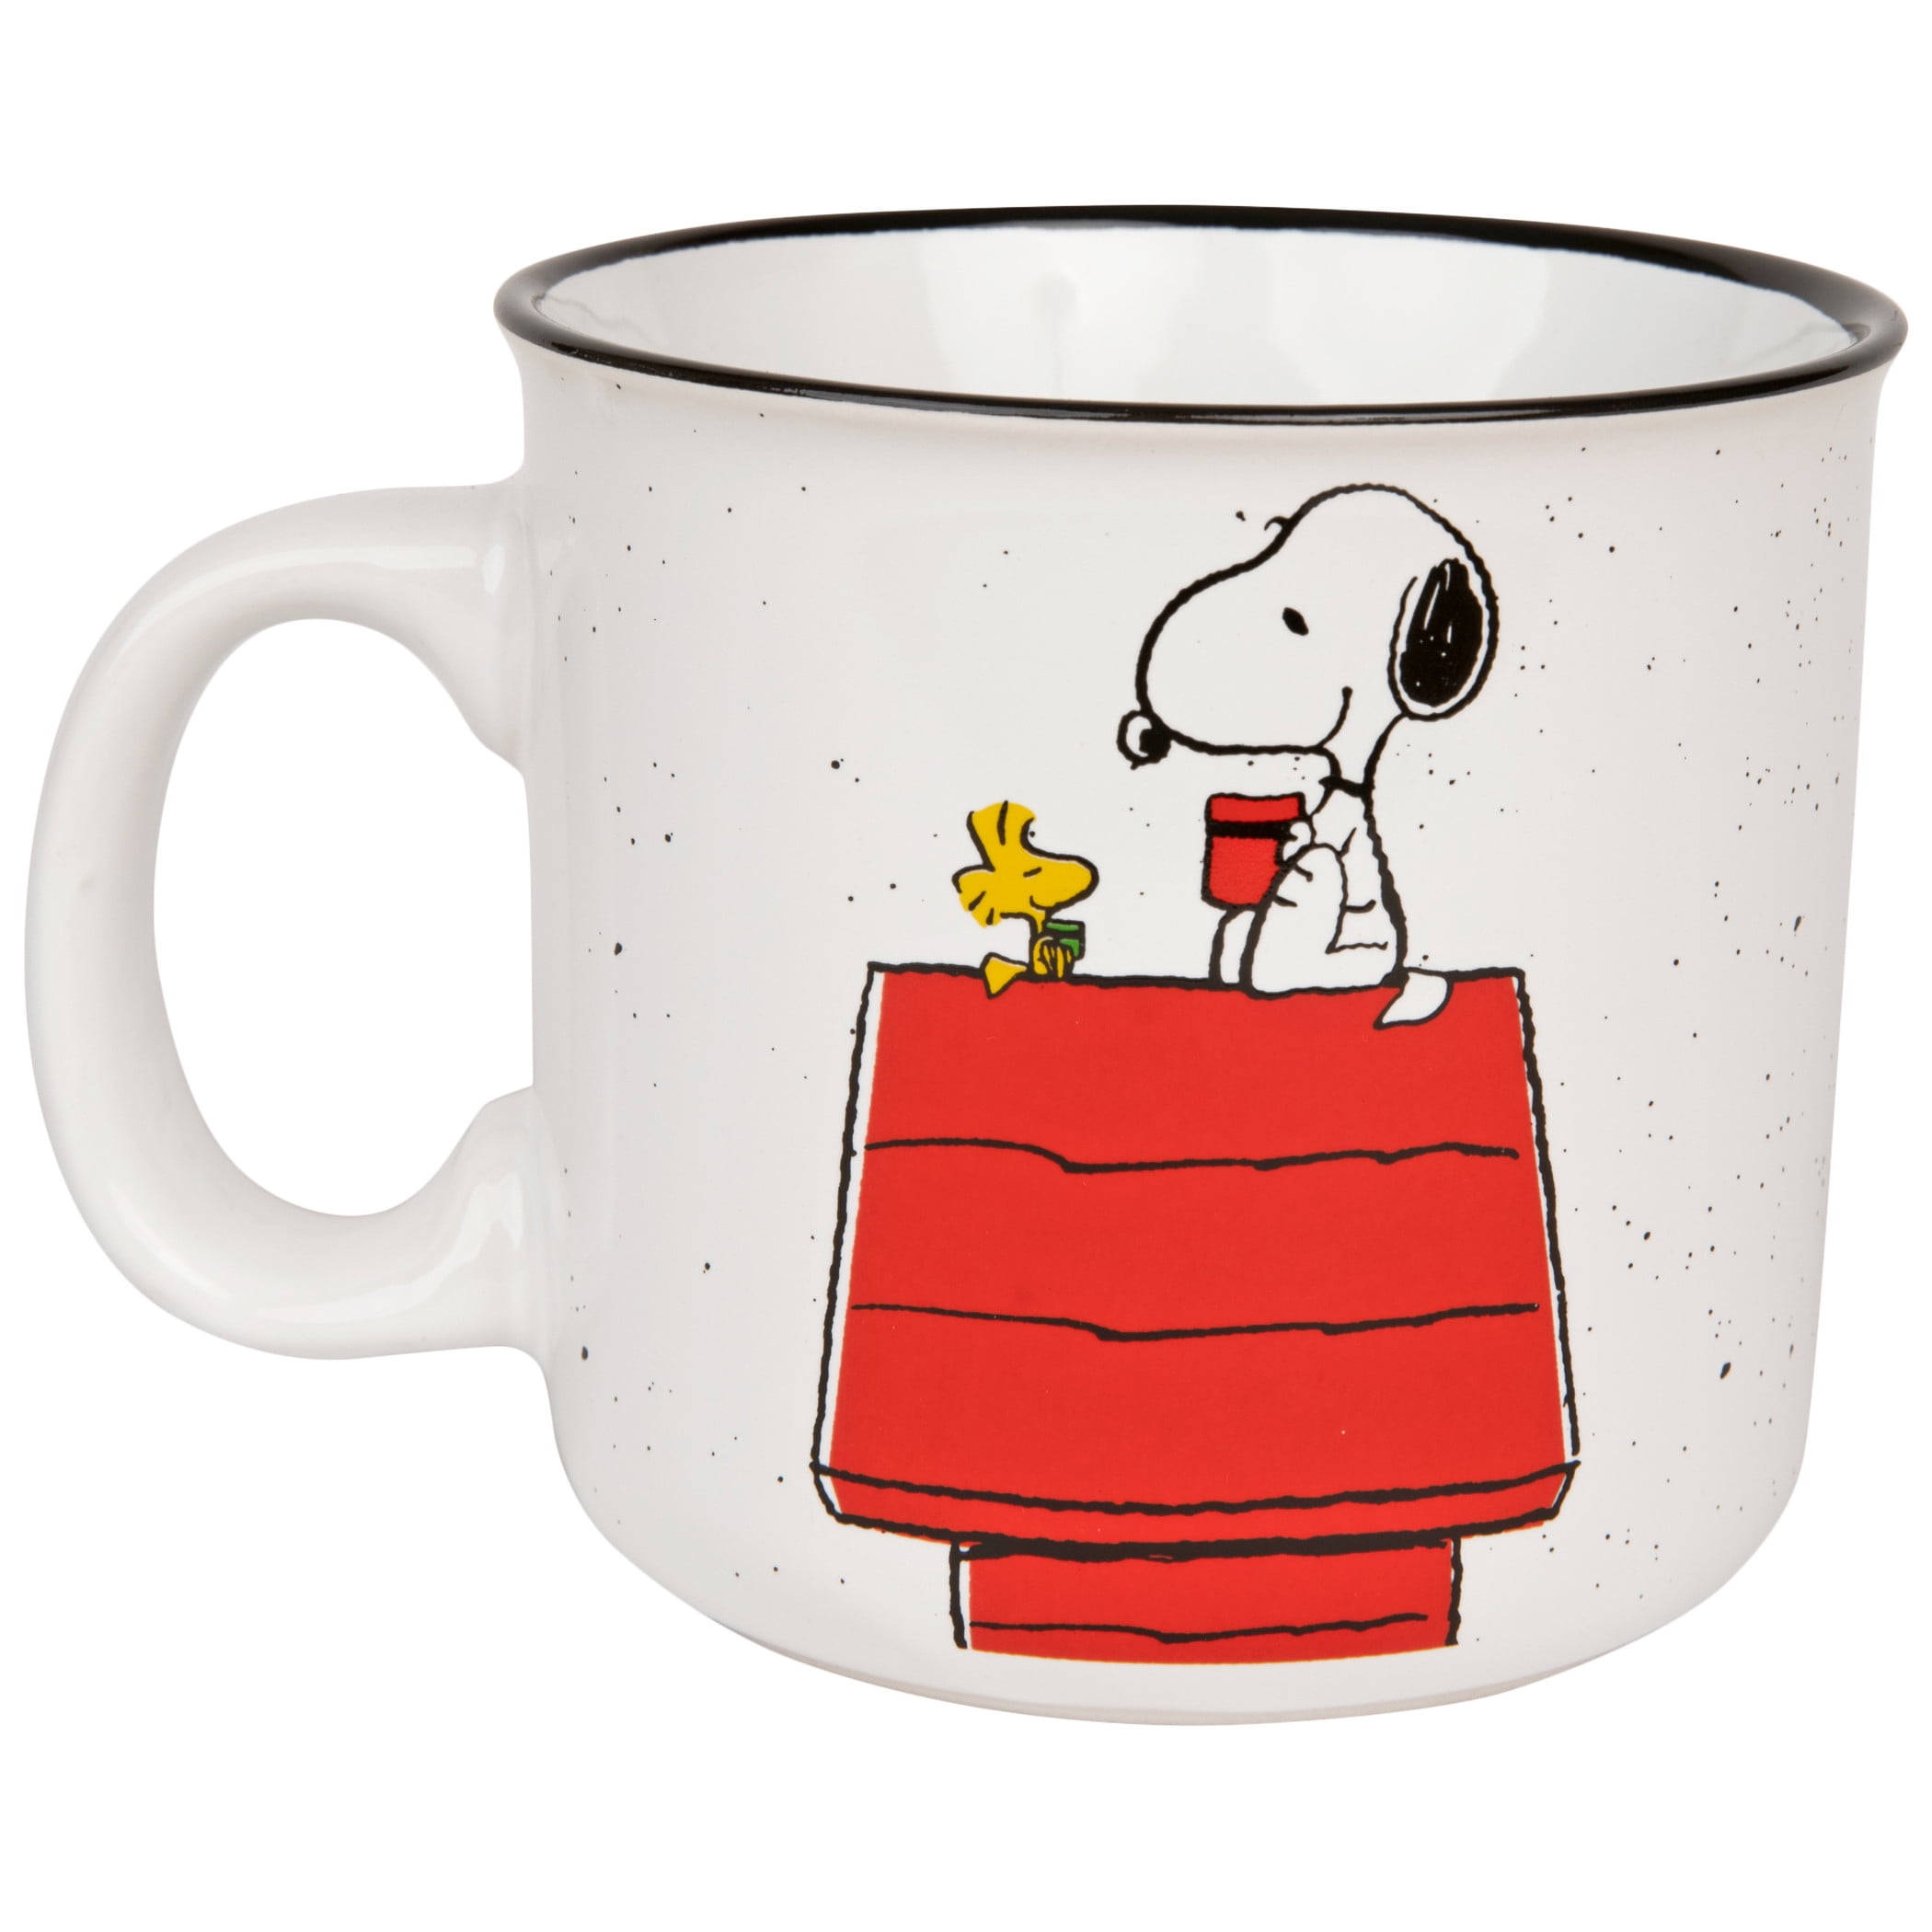 Peanuts Snoopy Woodstock Sleeping Ceramic Coffee Tea Mug with Lid 16 oz NEW 